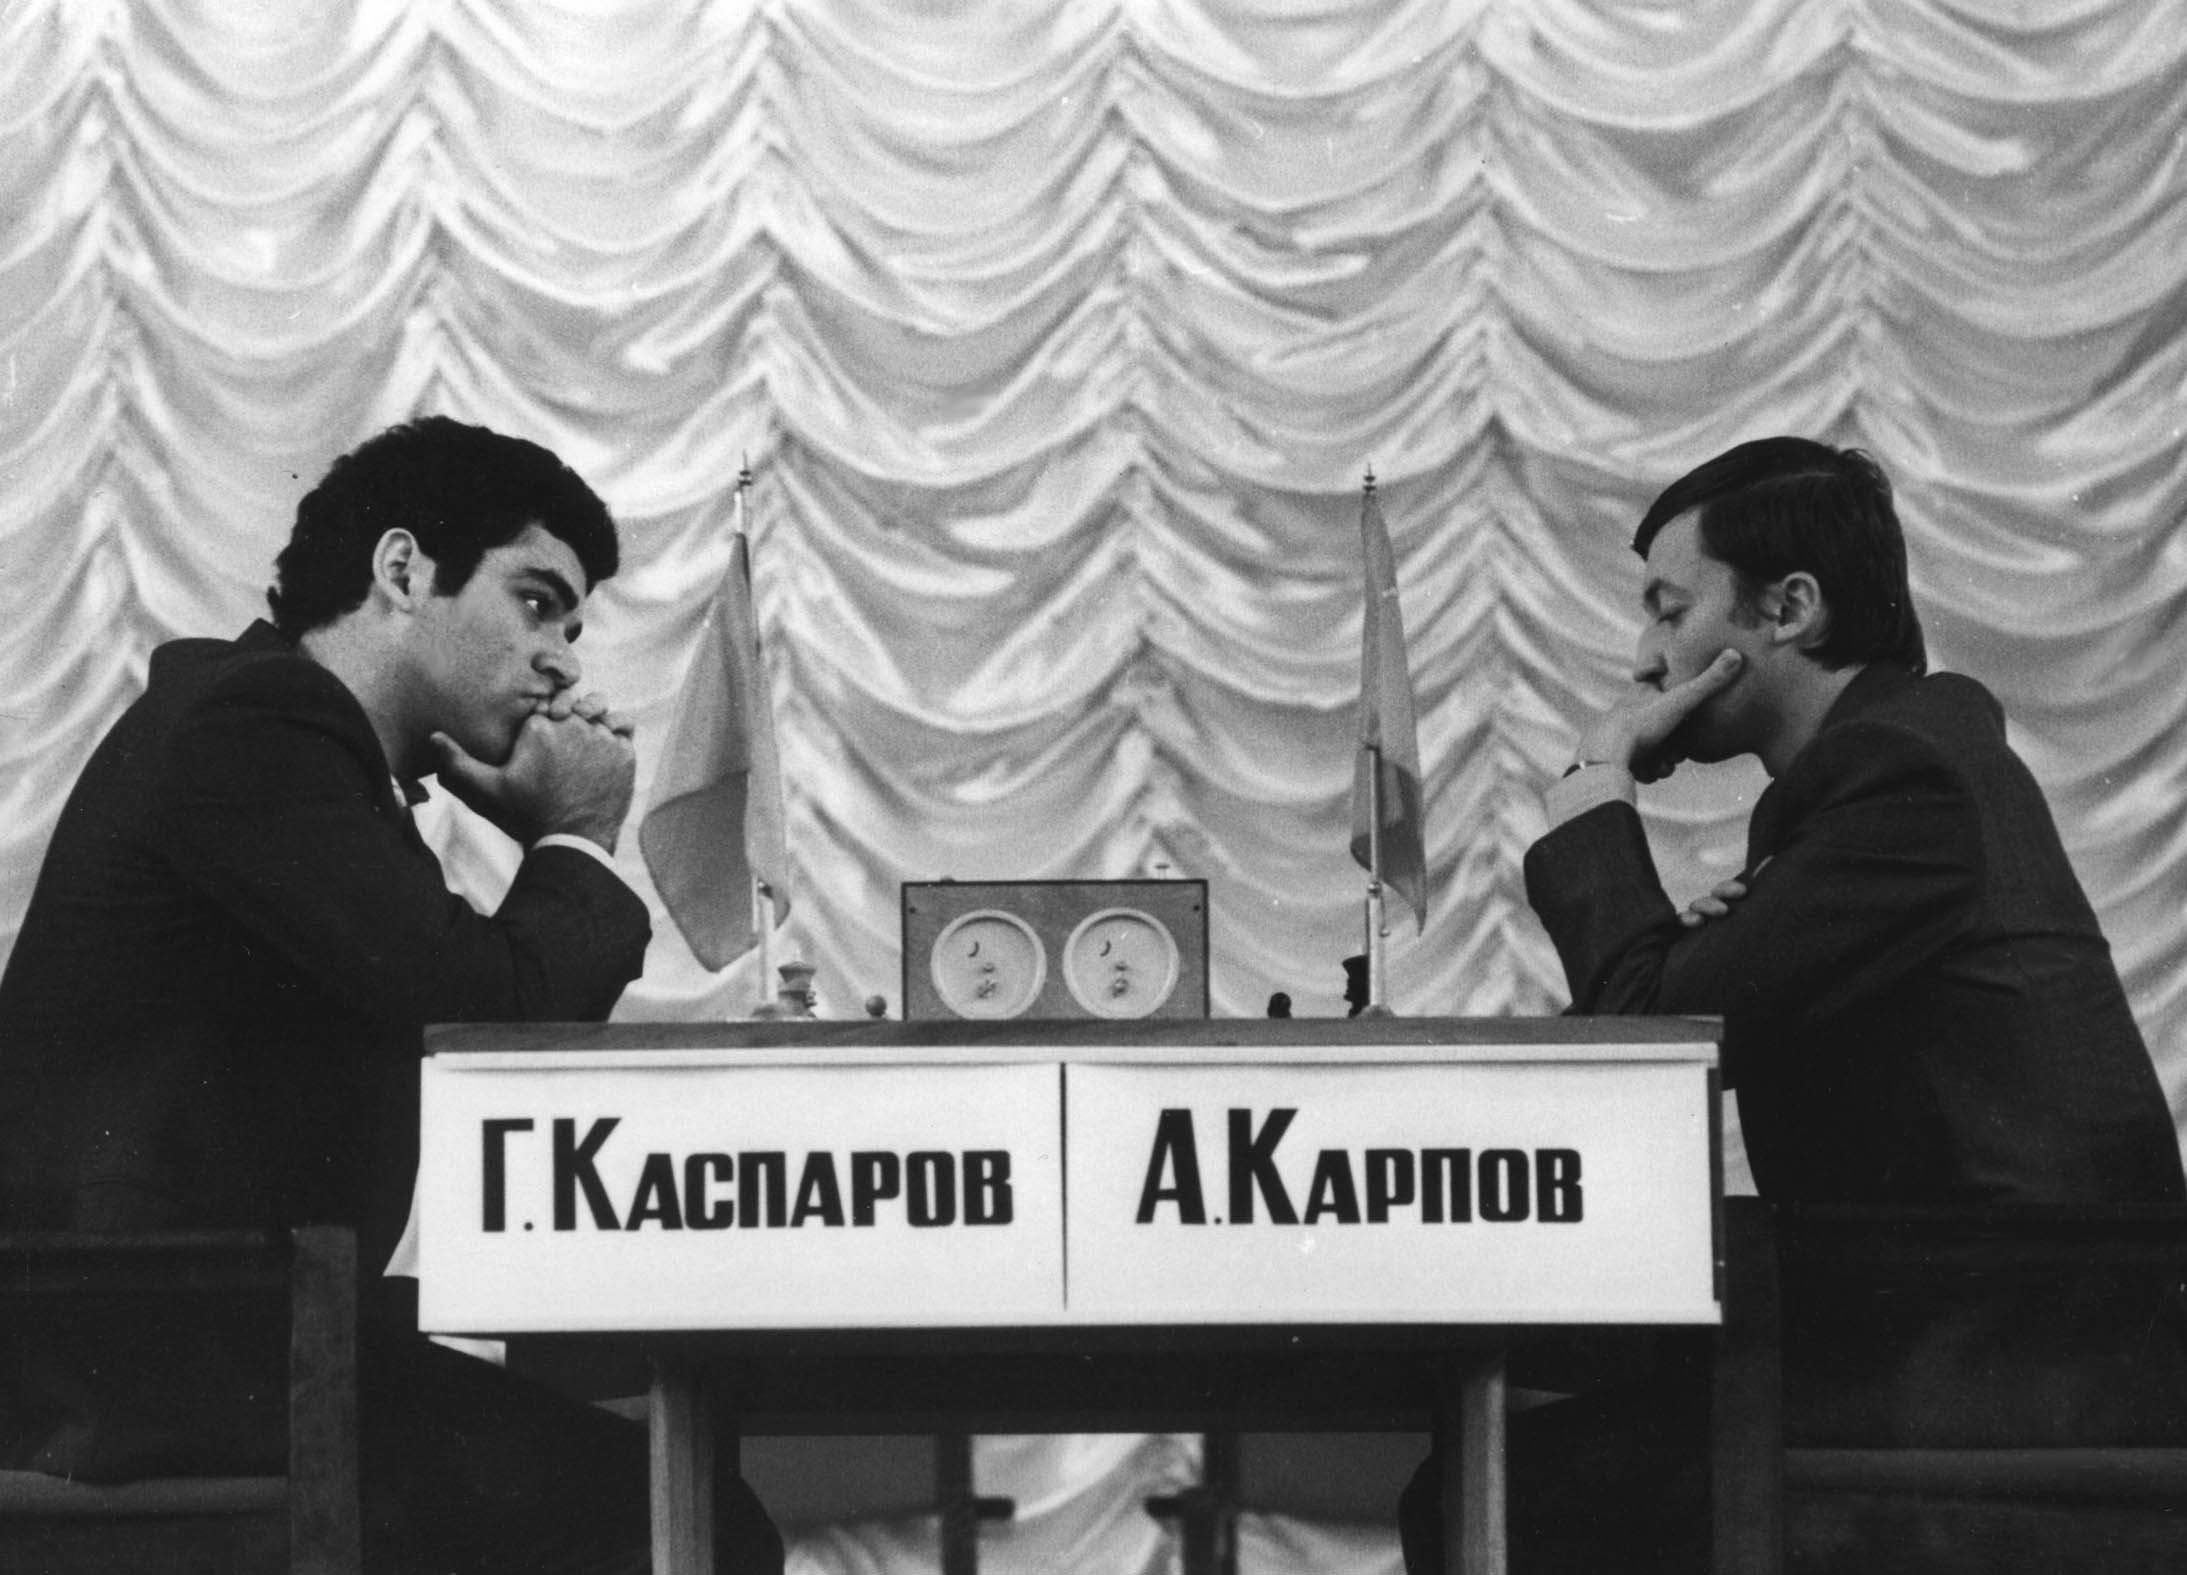 Kasparov, a lenda do xadrez, volta aos campeonatos 12 anos depois, Xadrez